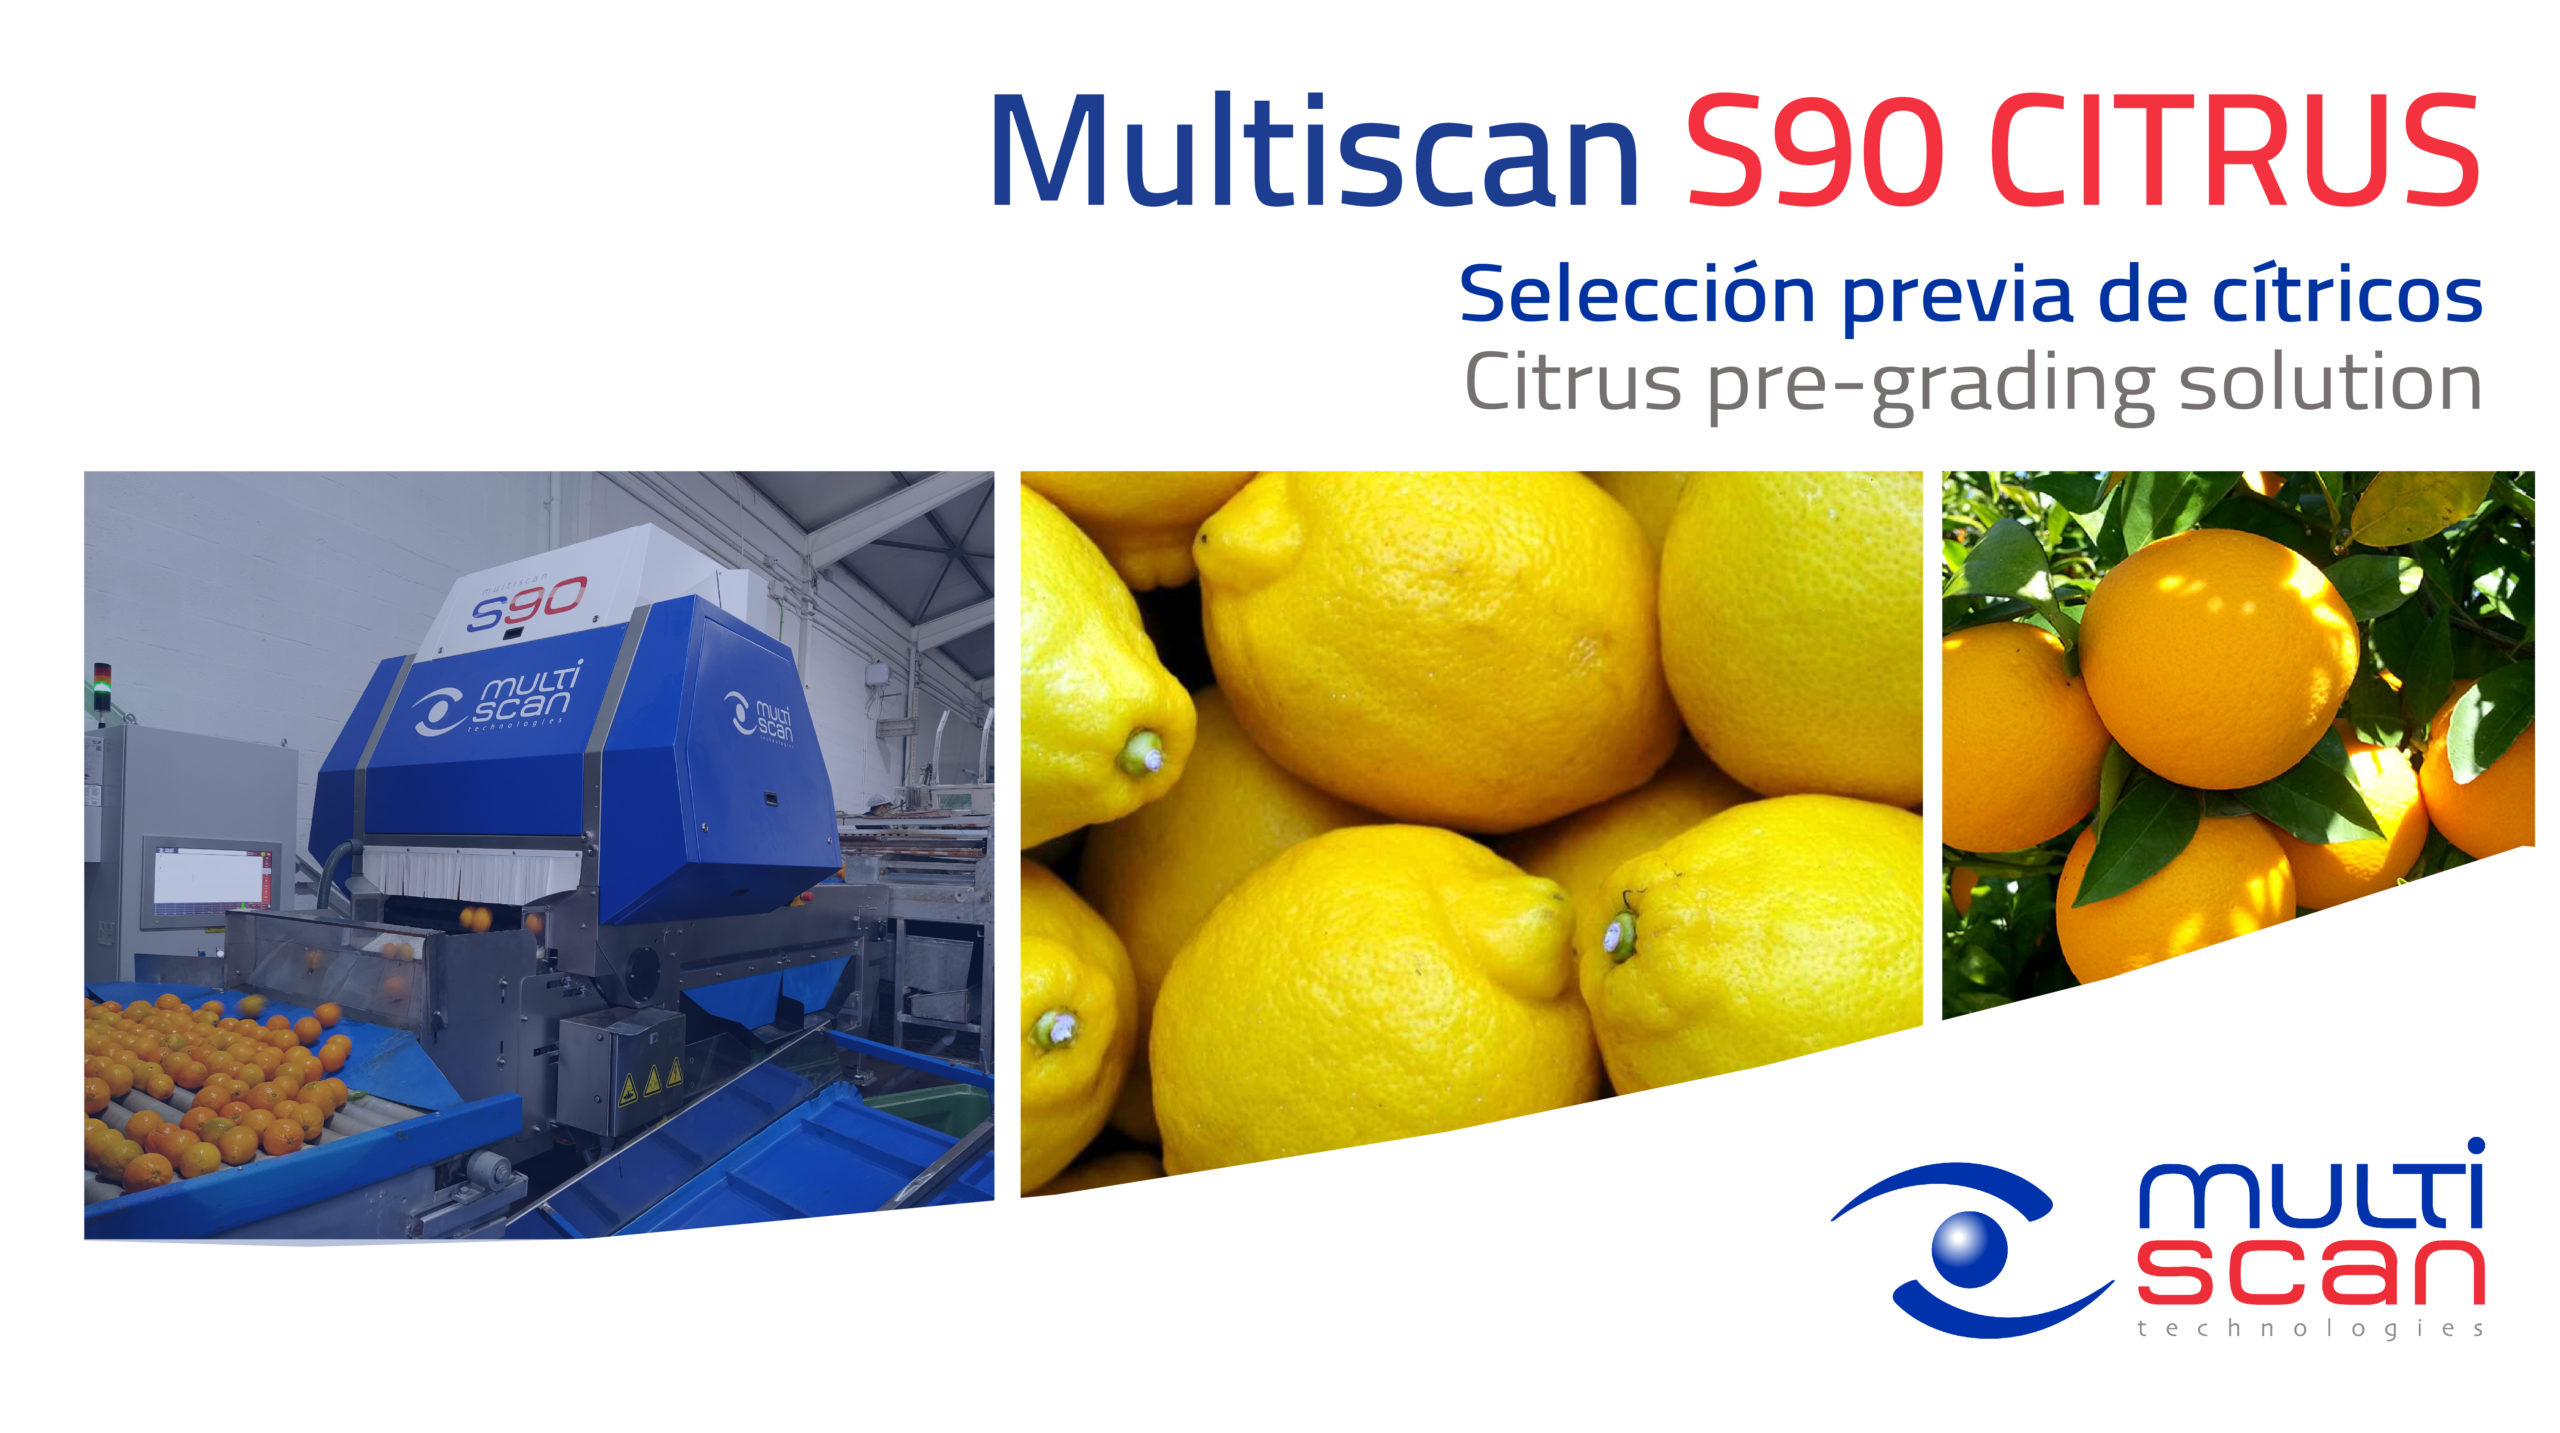 Multiscan Technologies lanza al mercado la nueva selectora Multiscan S90 Citrus